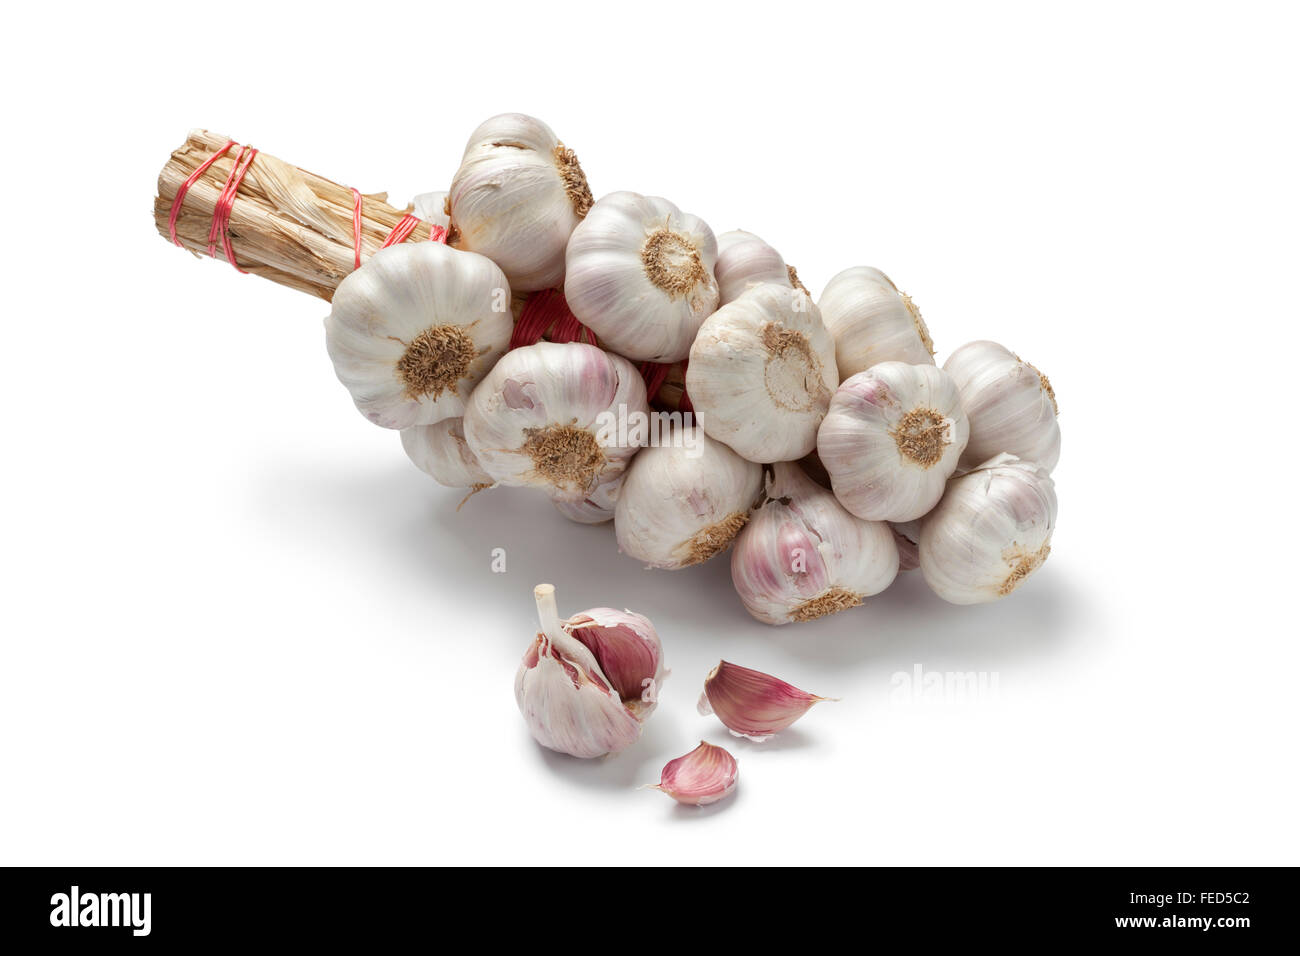 Stringa di bulbi di aglio su sfondo bianco Foto Stock